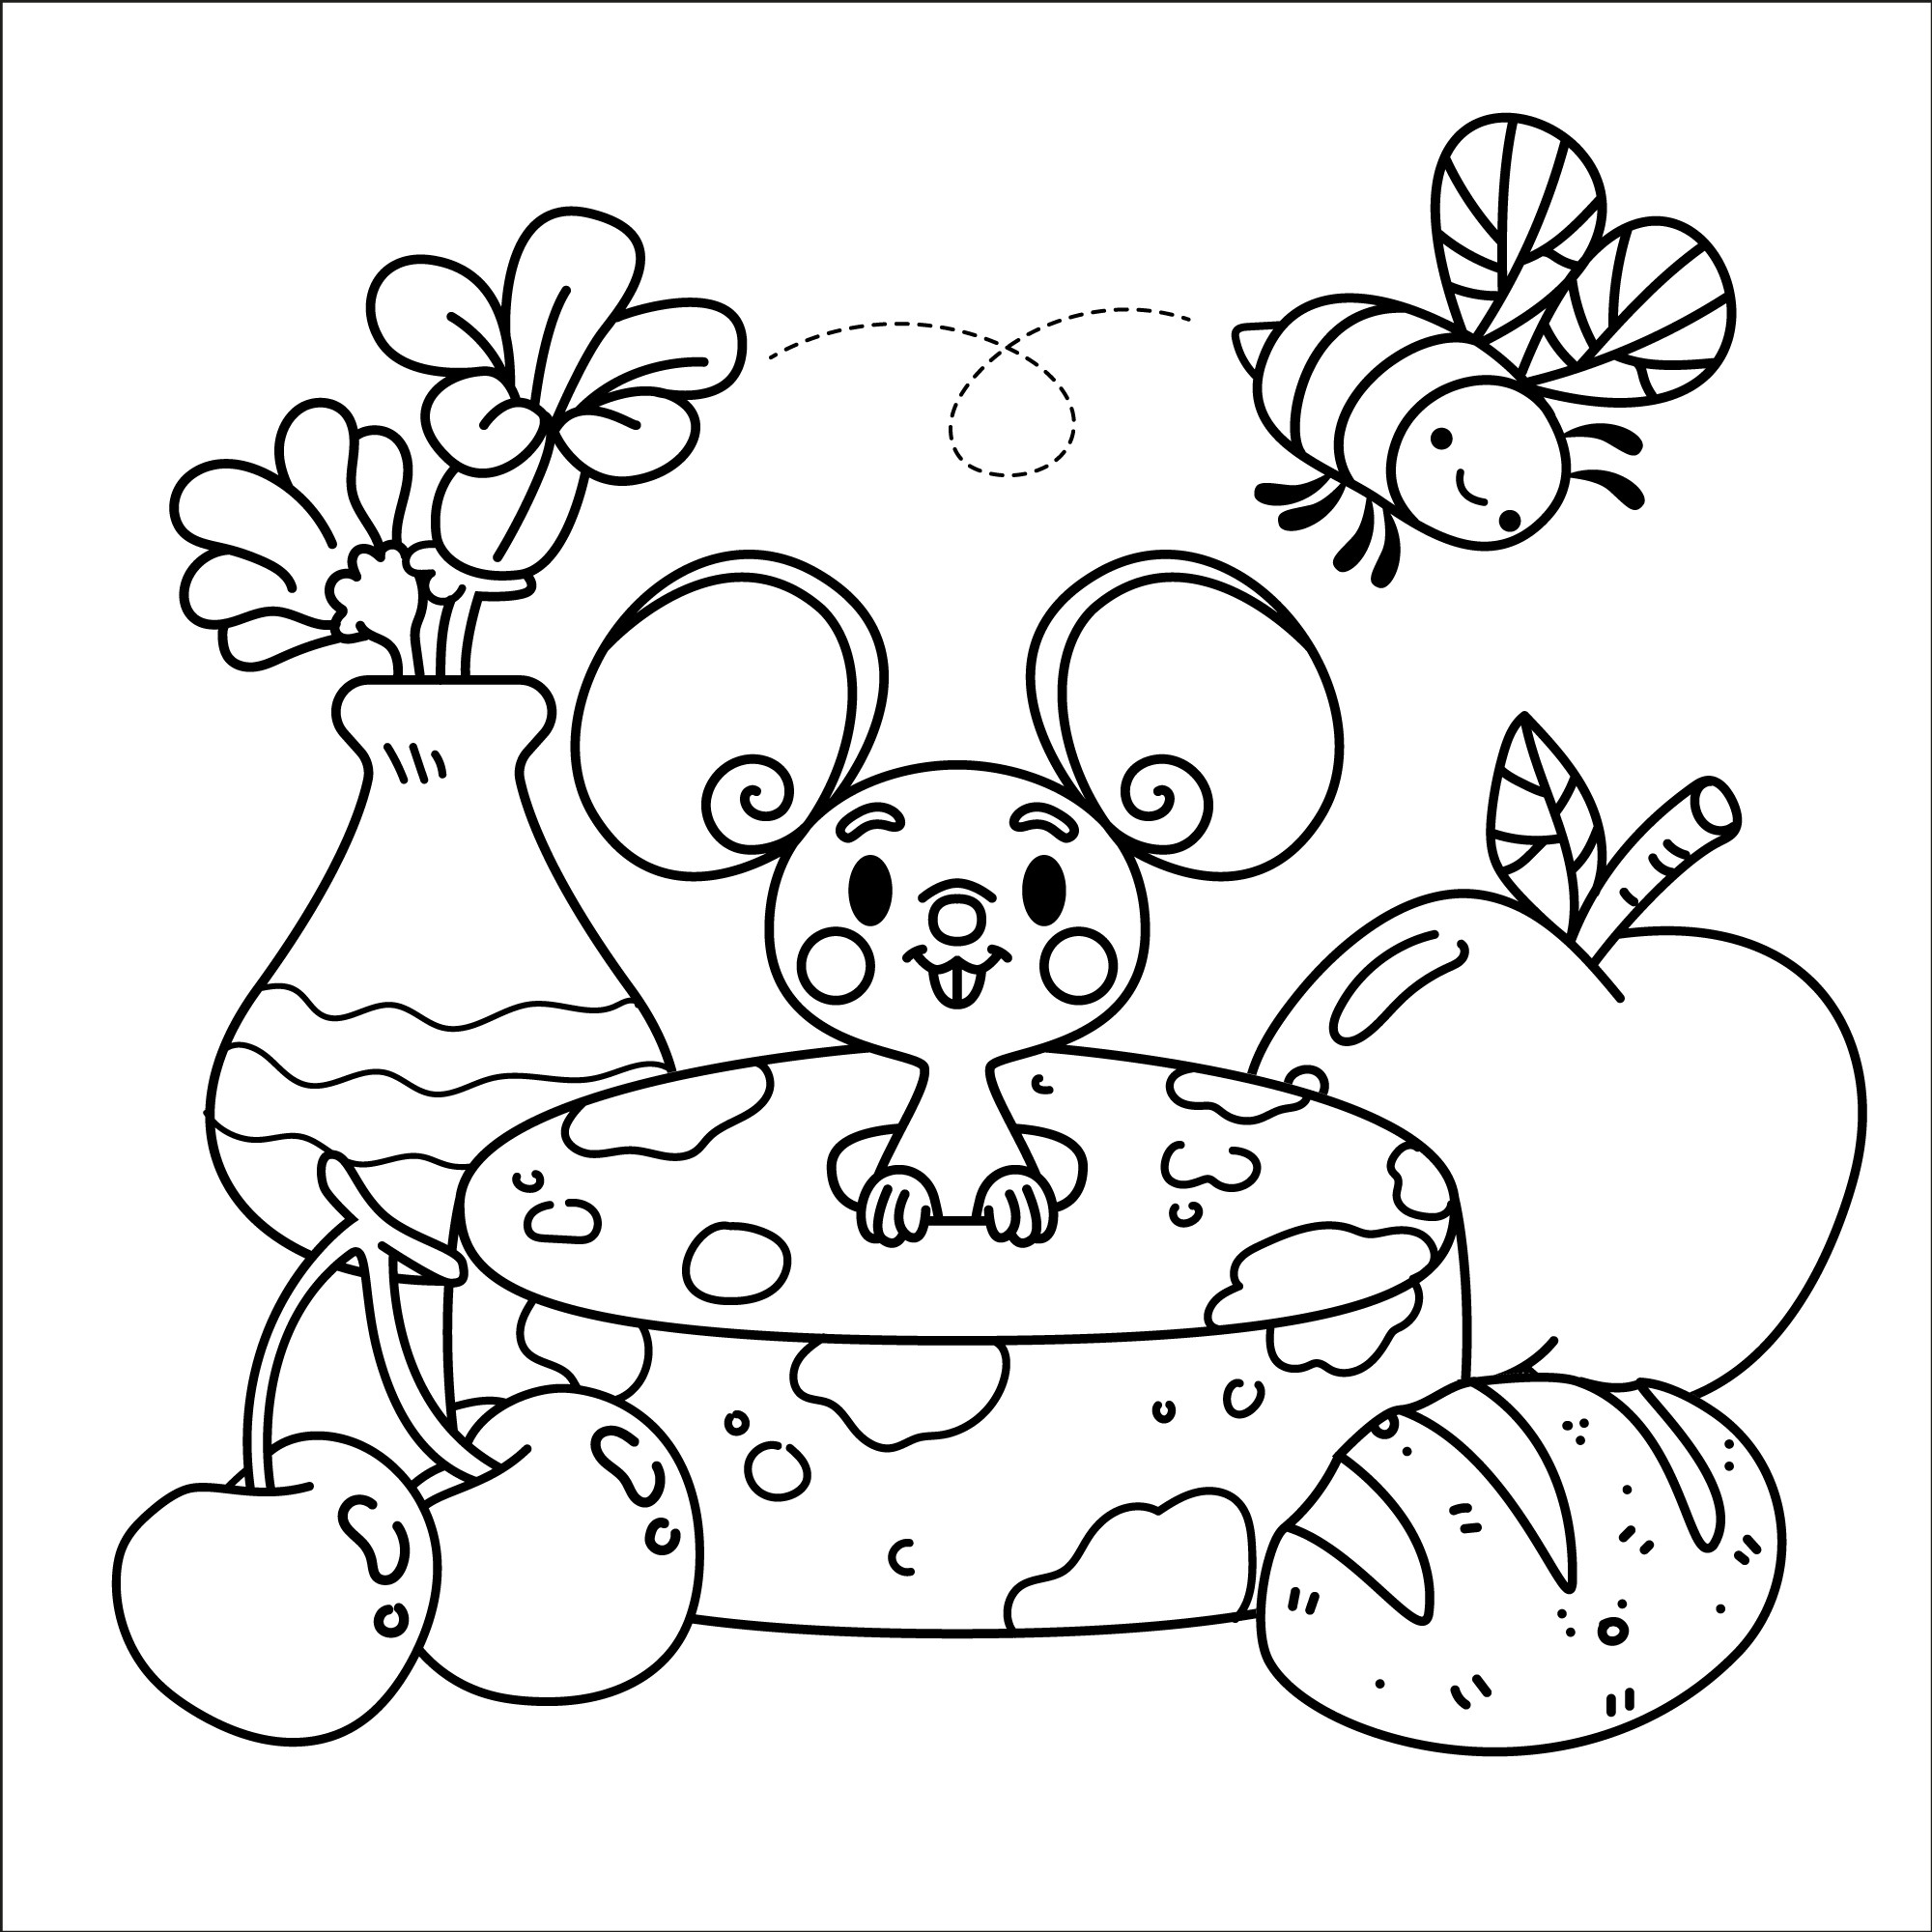 Раскраска для детей: мышонок выглядывает из сыра на фоне фруктов и пчелки